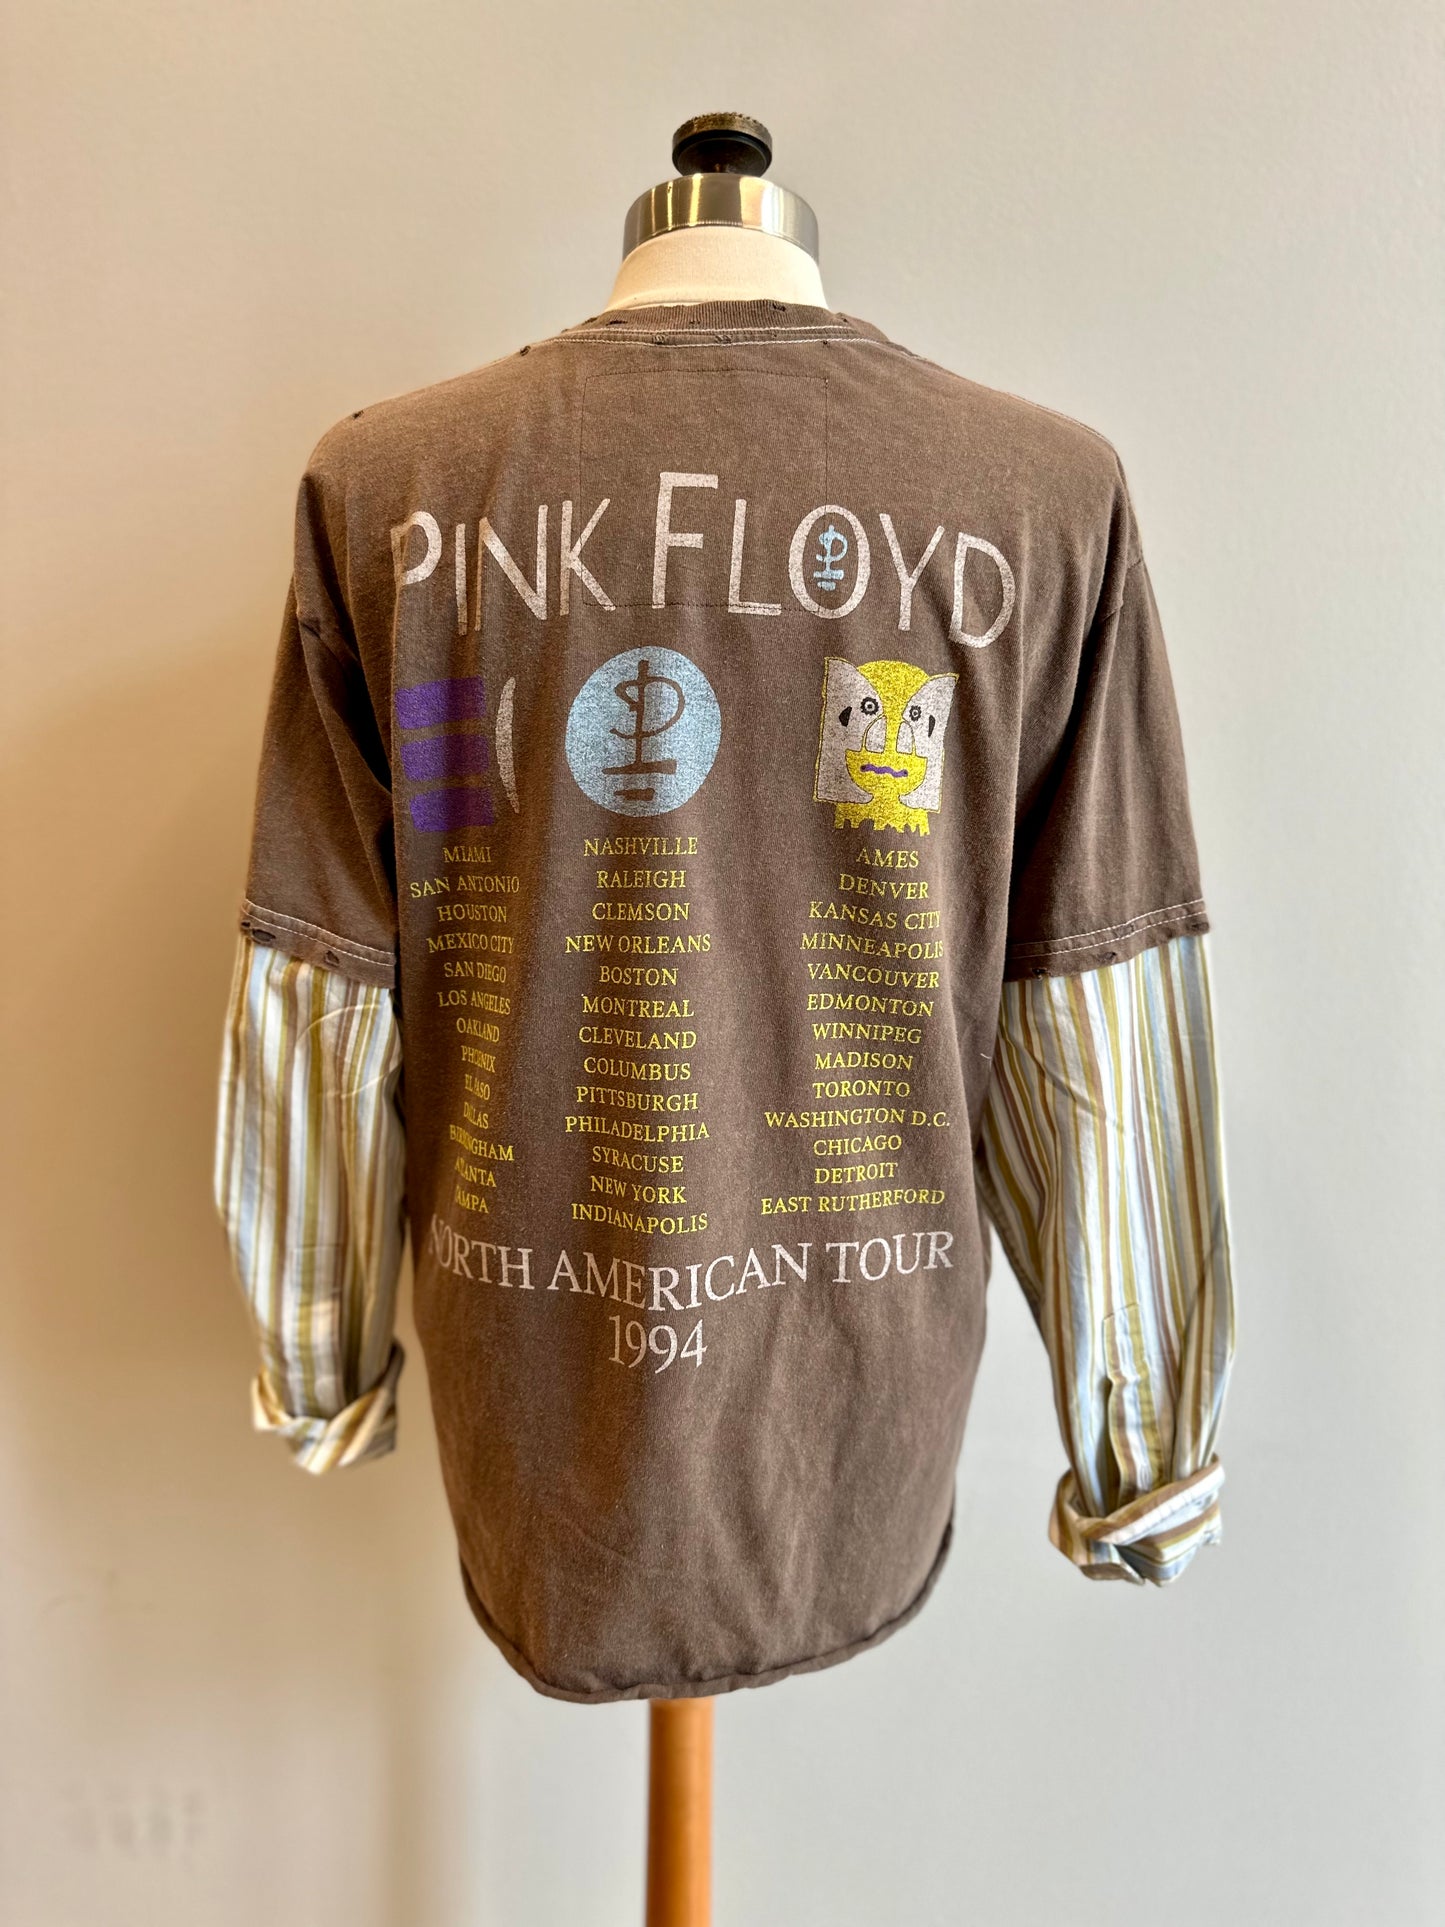 The Floyd